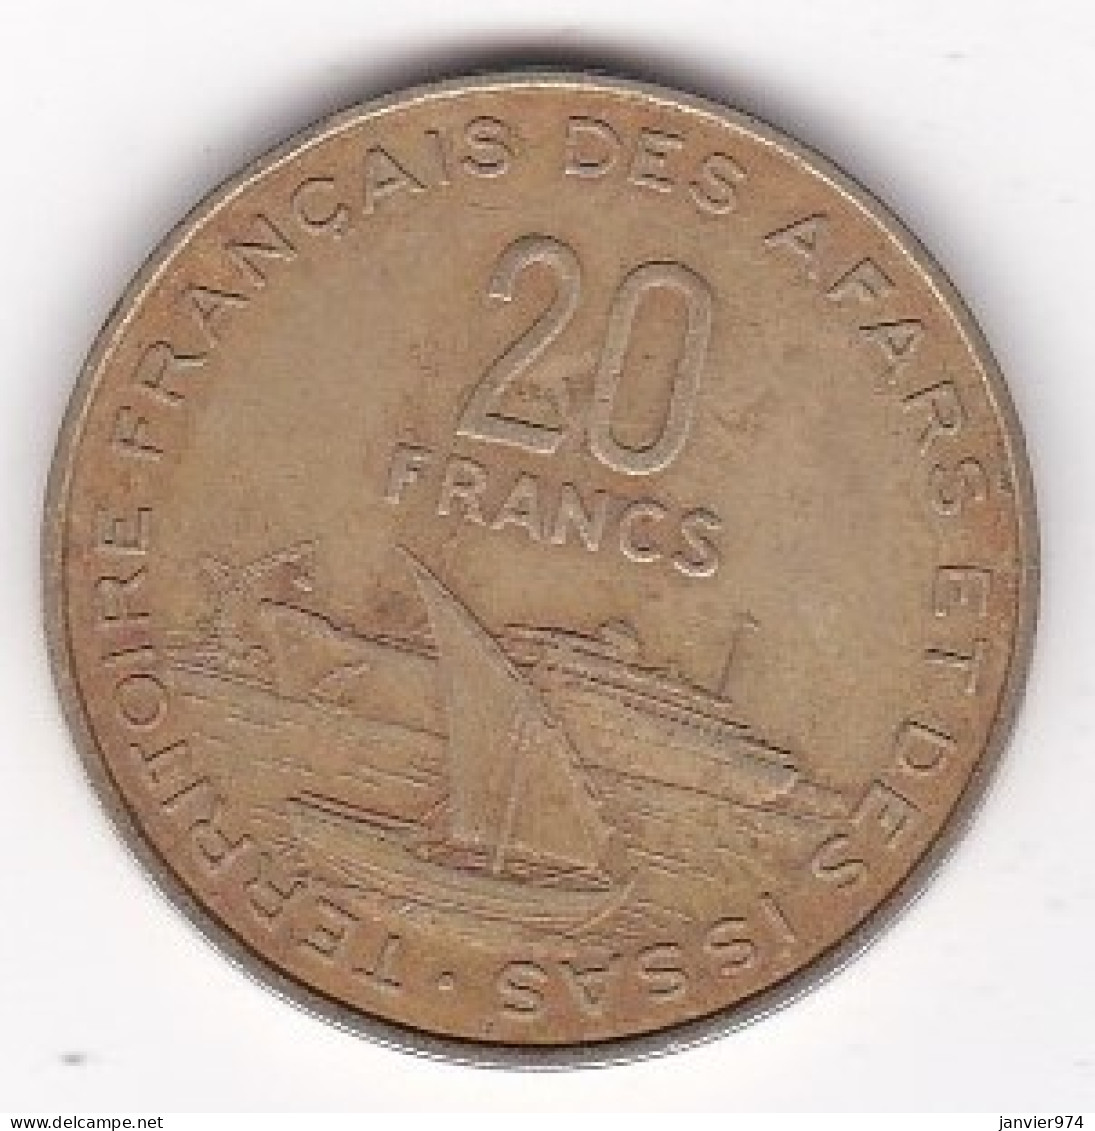 Territoire Français Des Afars Et Des Issas Djibouti 10 Francs 1975 , En Cupro Alu Nickel , Lec# 63 - Djibouti